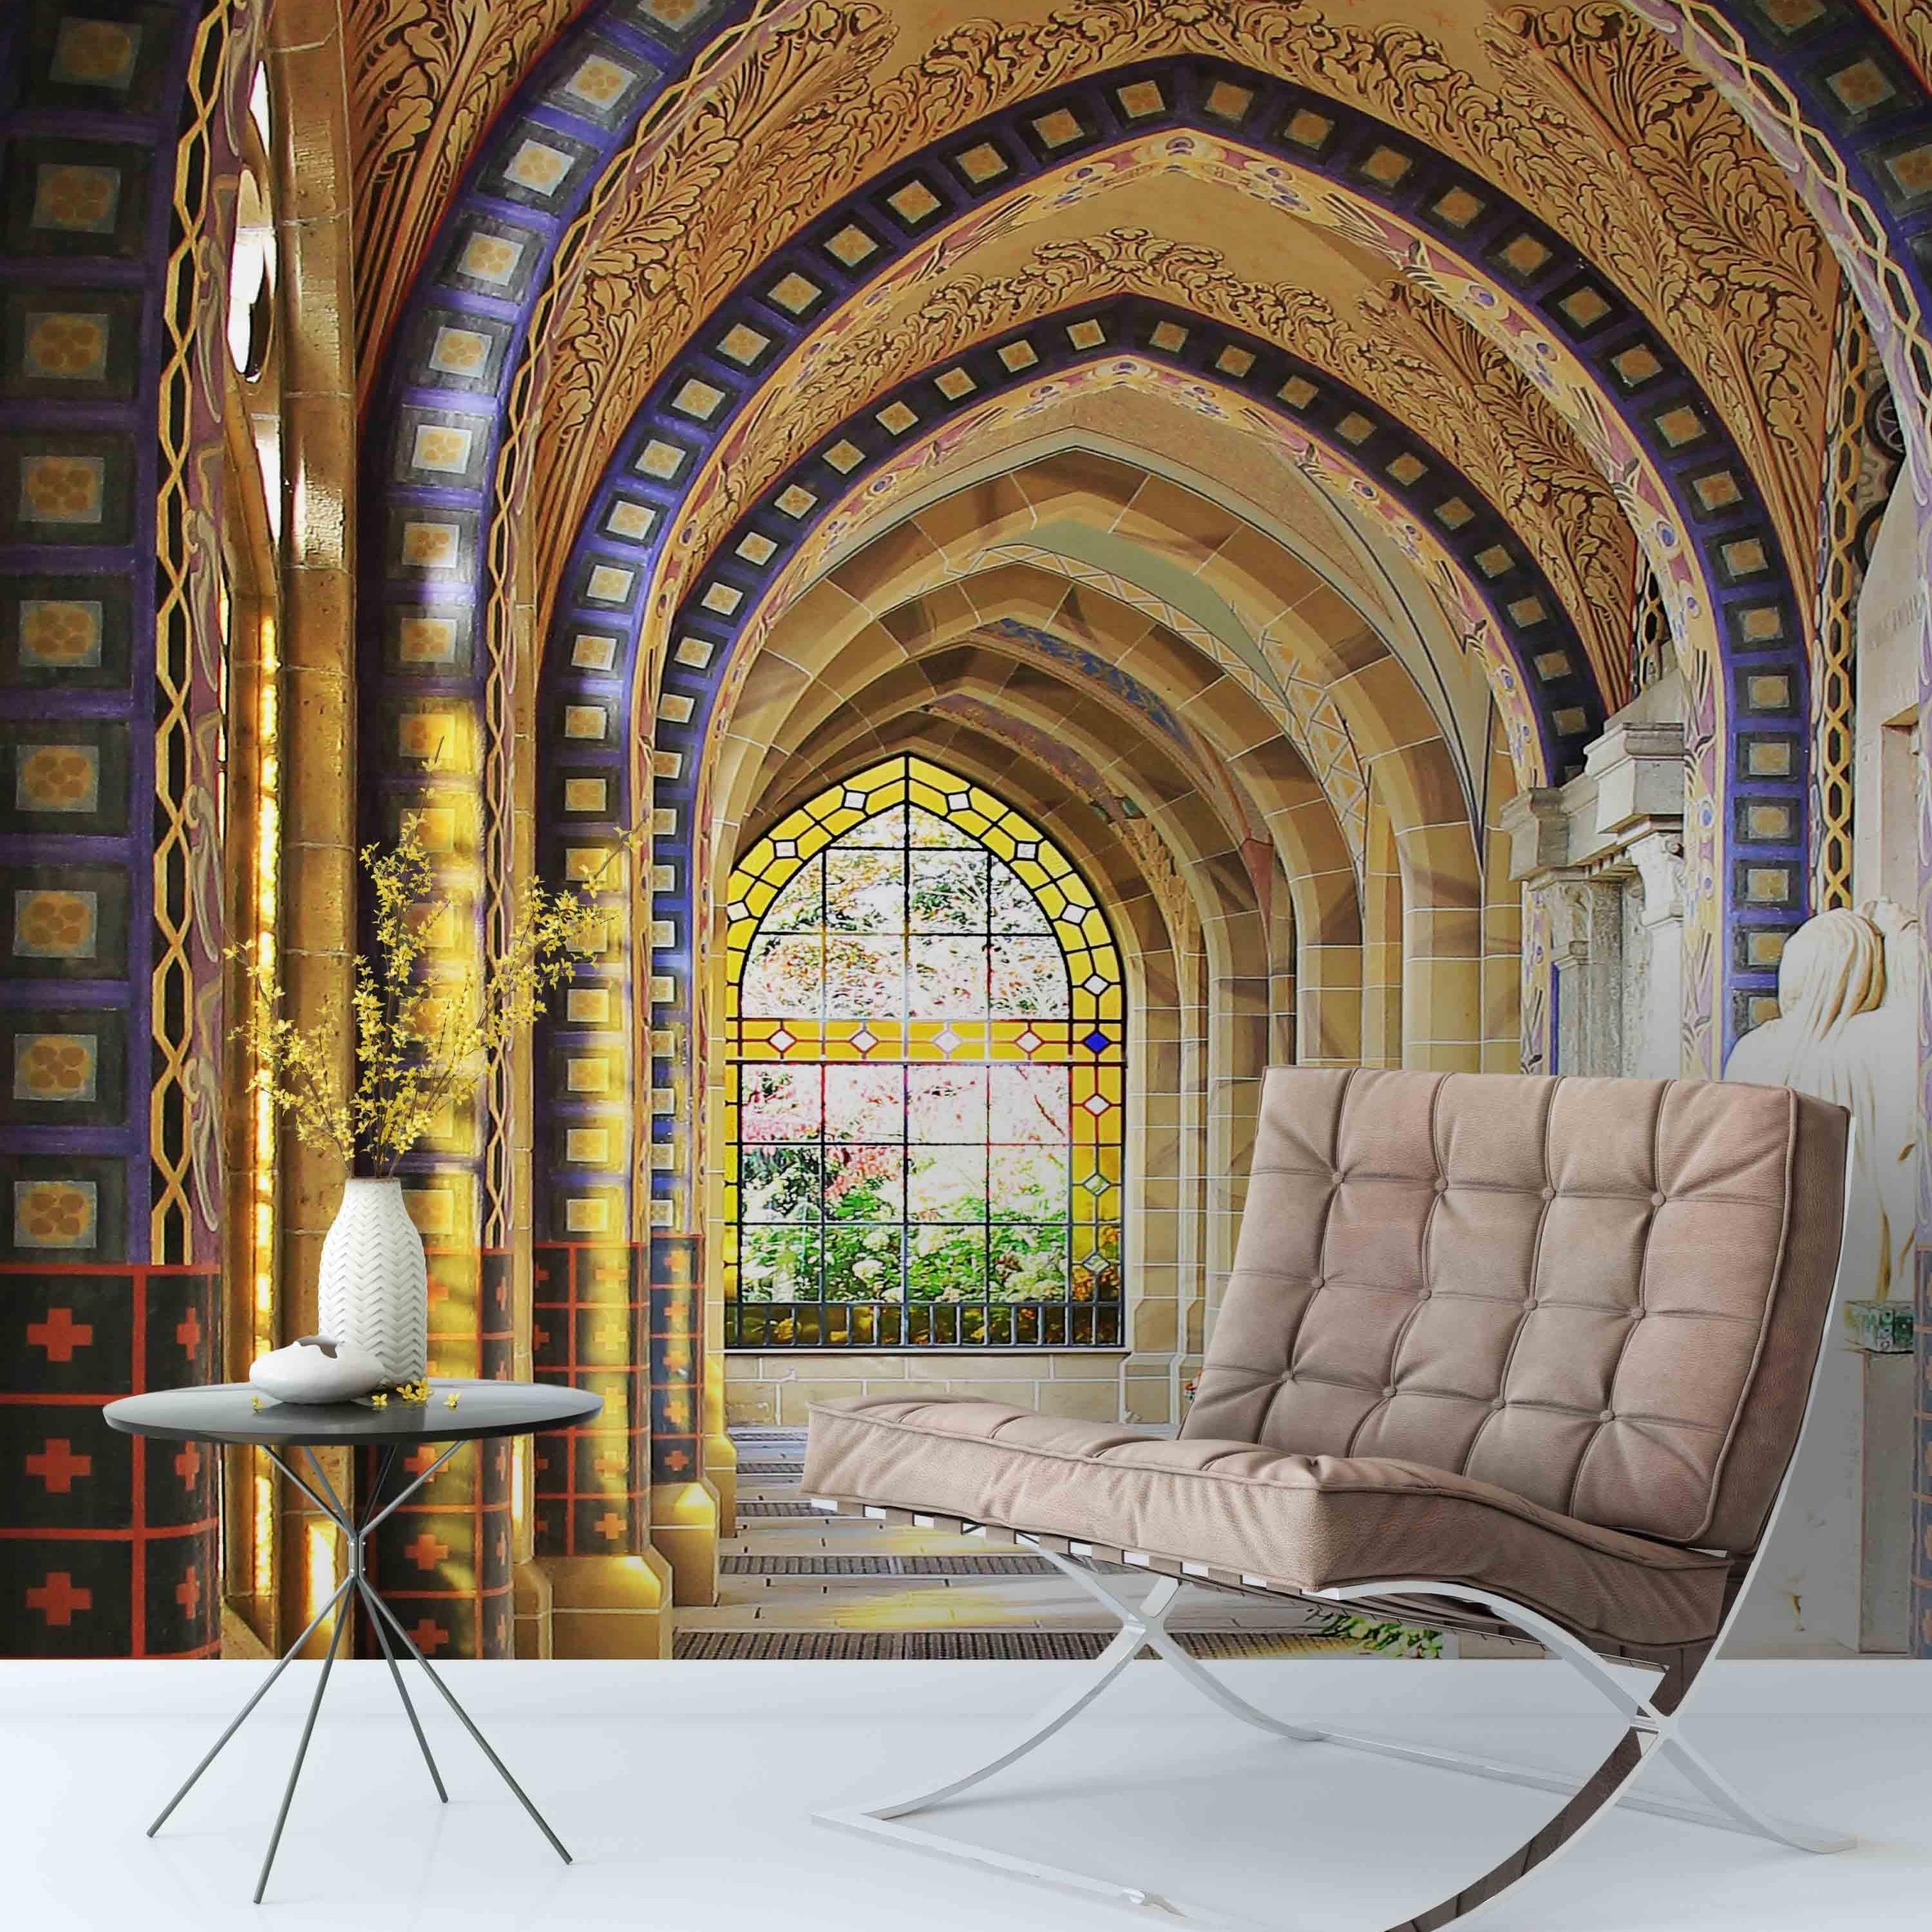 3D Corridor Arch Building Window Wall Mural Wallpaper 74- Jess Art Decoration